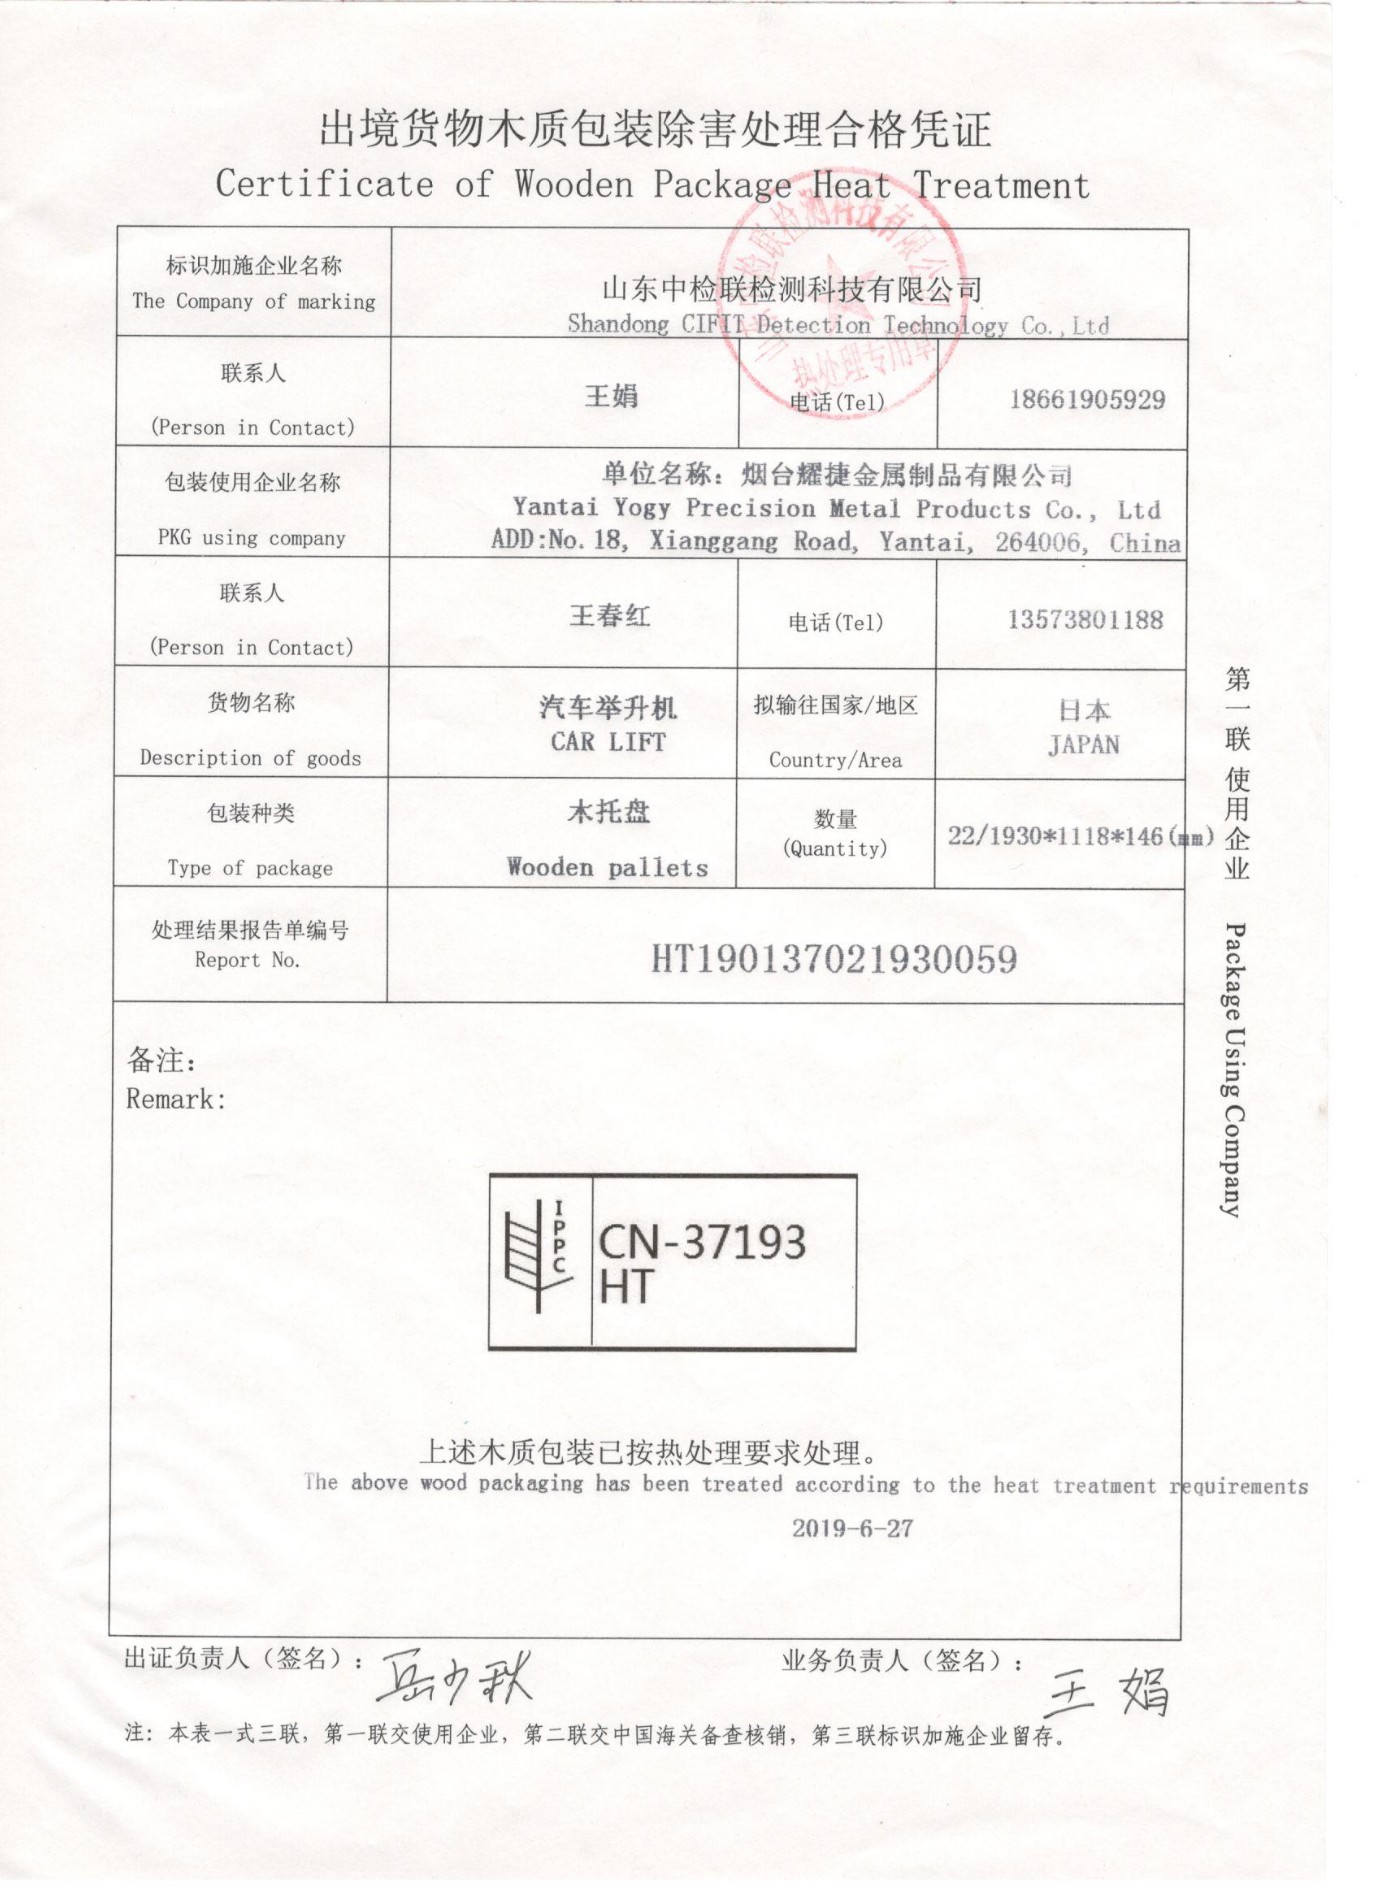 Сертификат термообработки деревянных упаковок